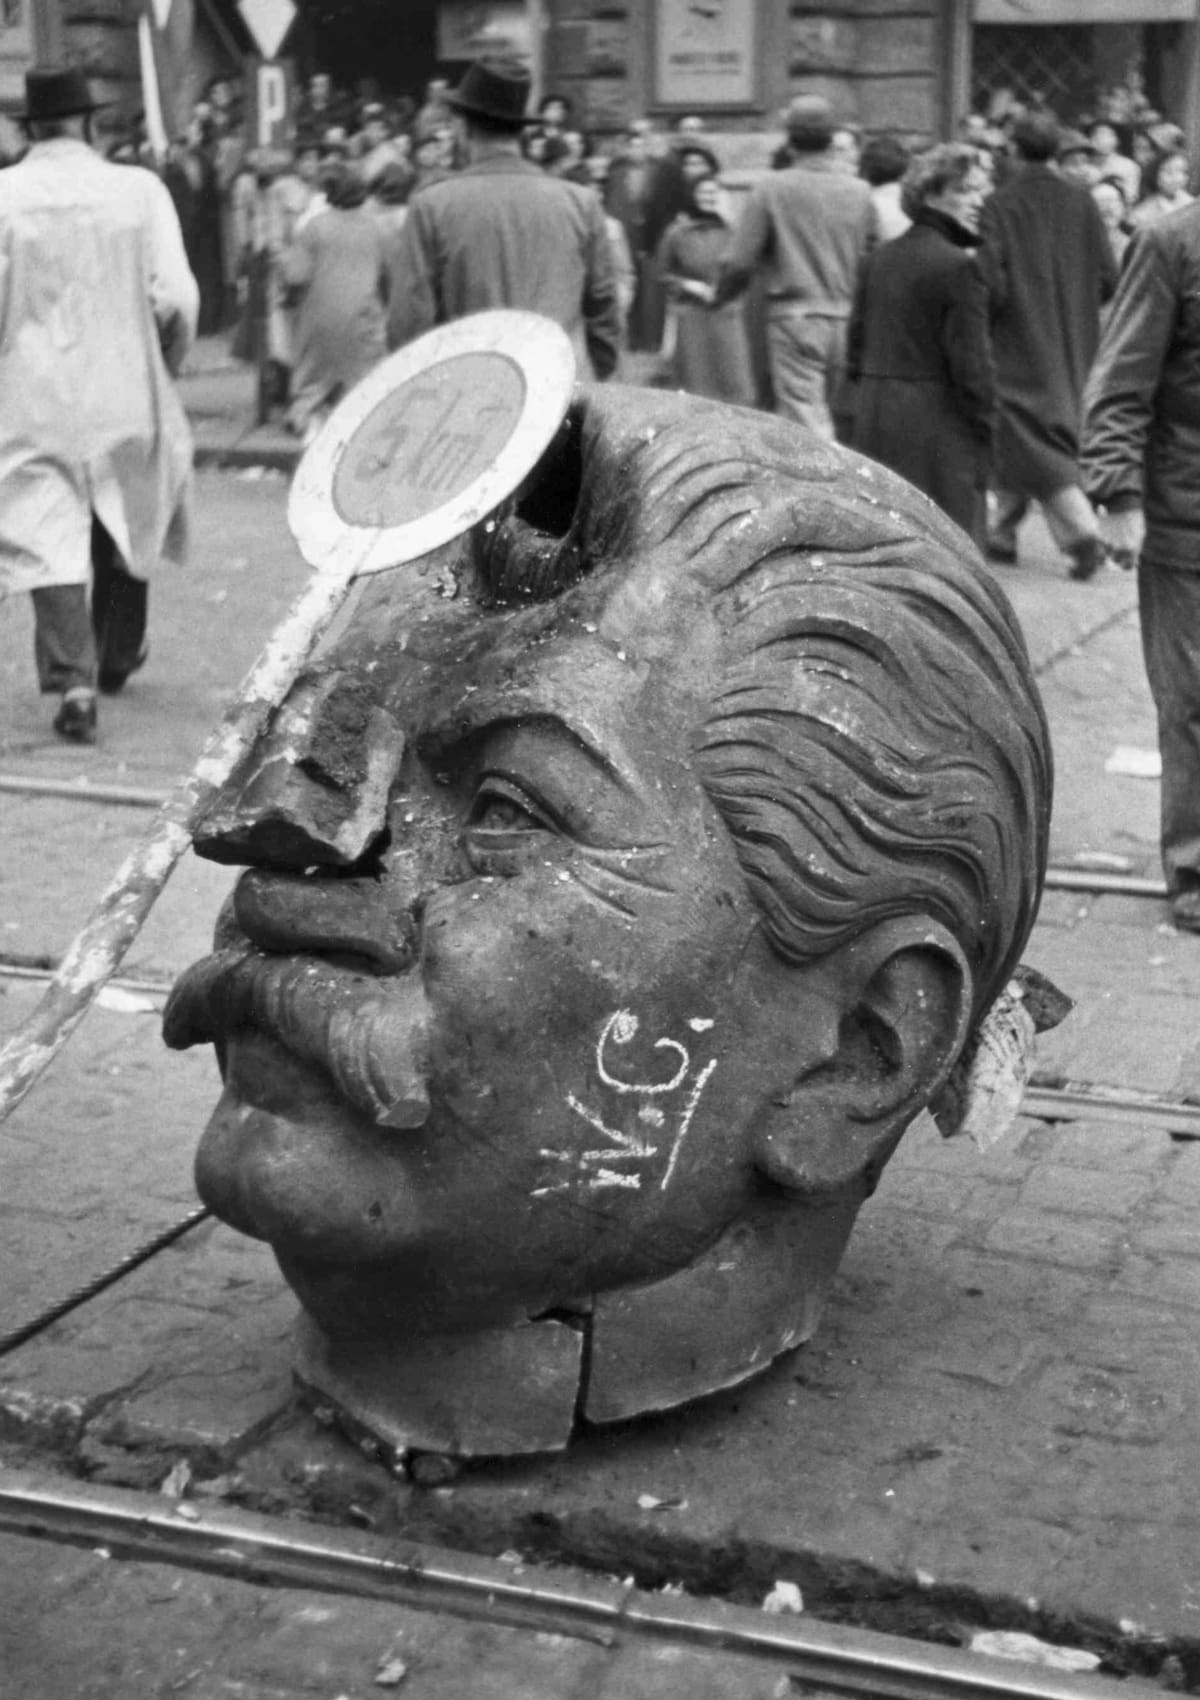 Došlo také ke svržení sochy Josifa Stalina.